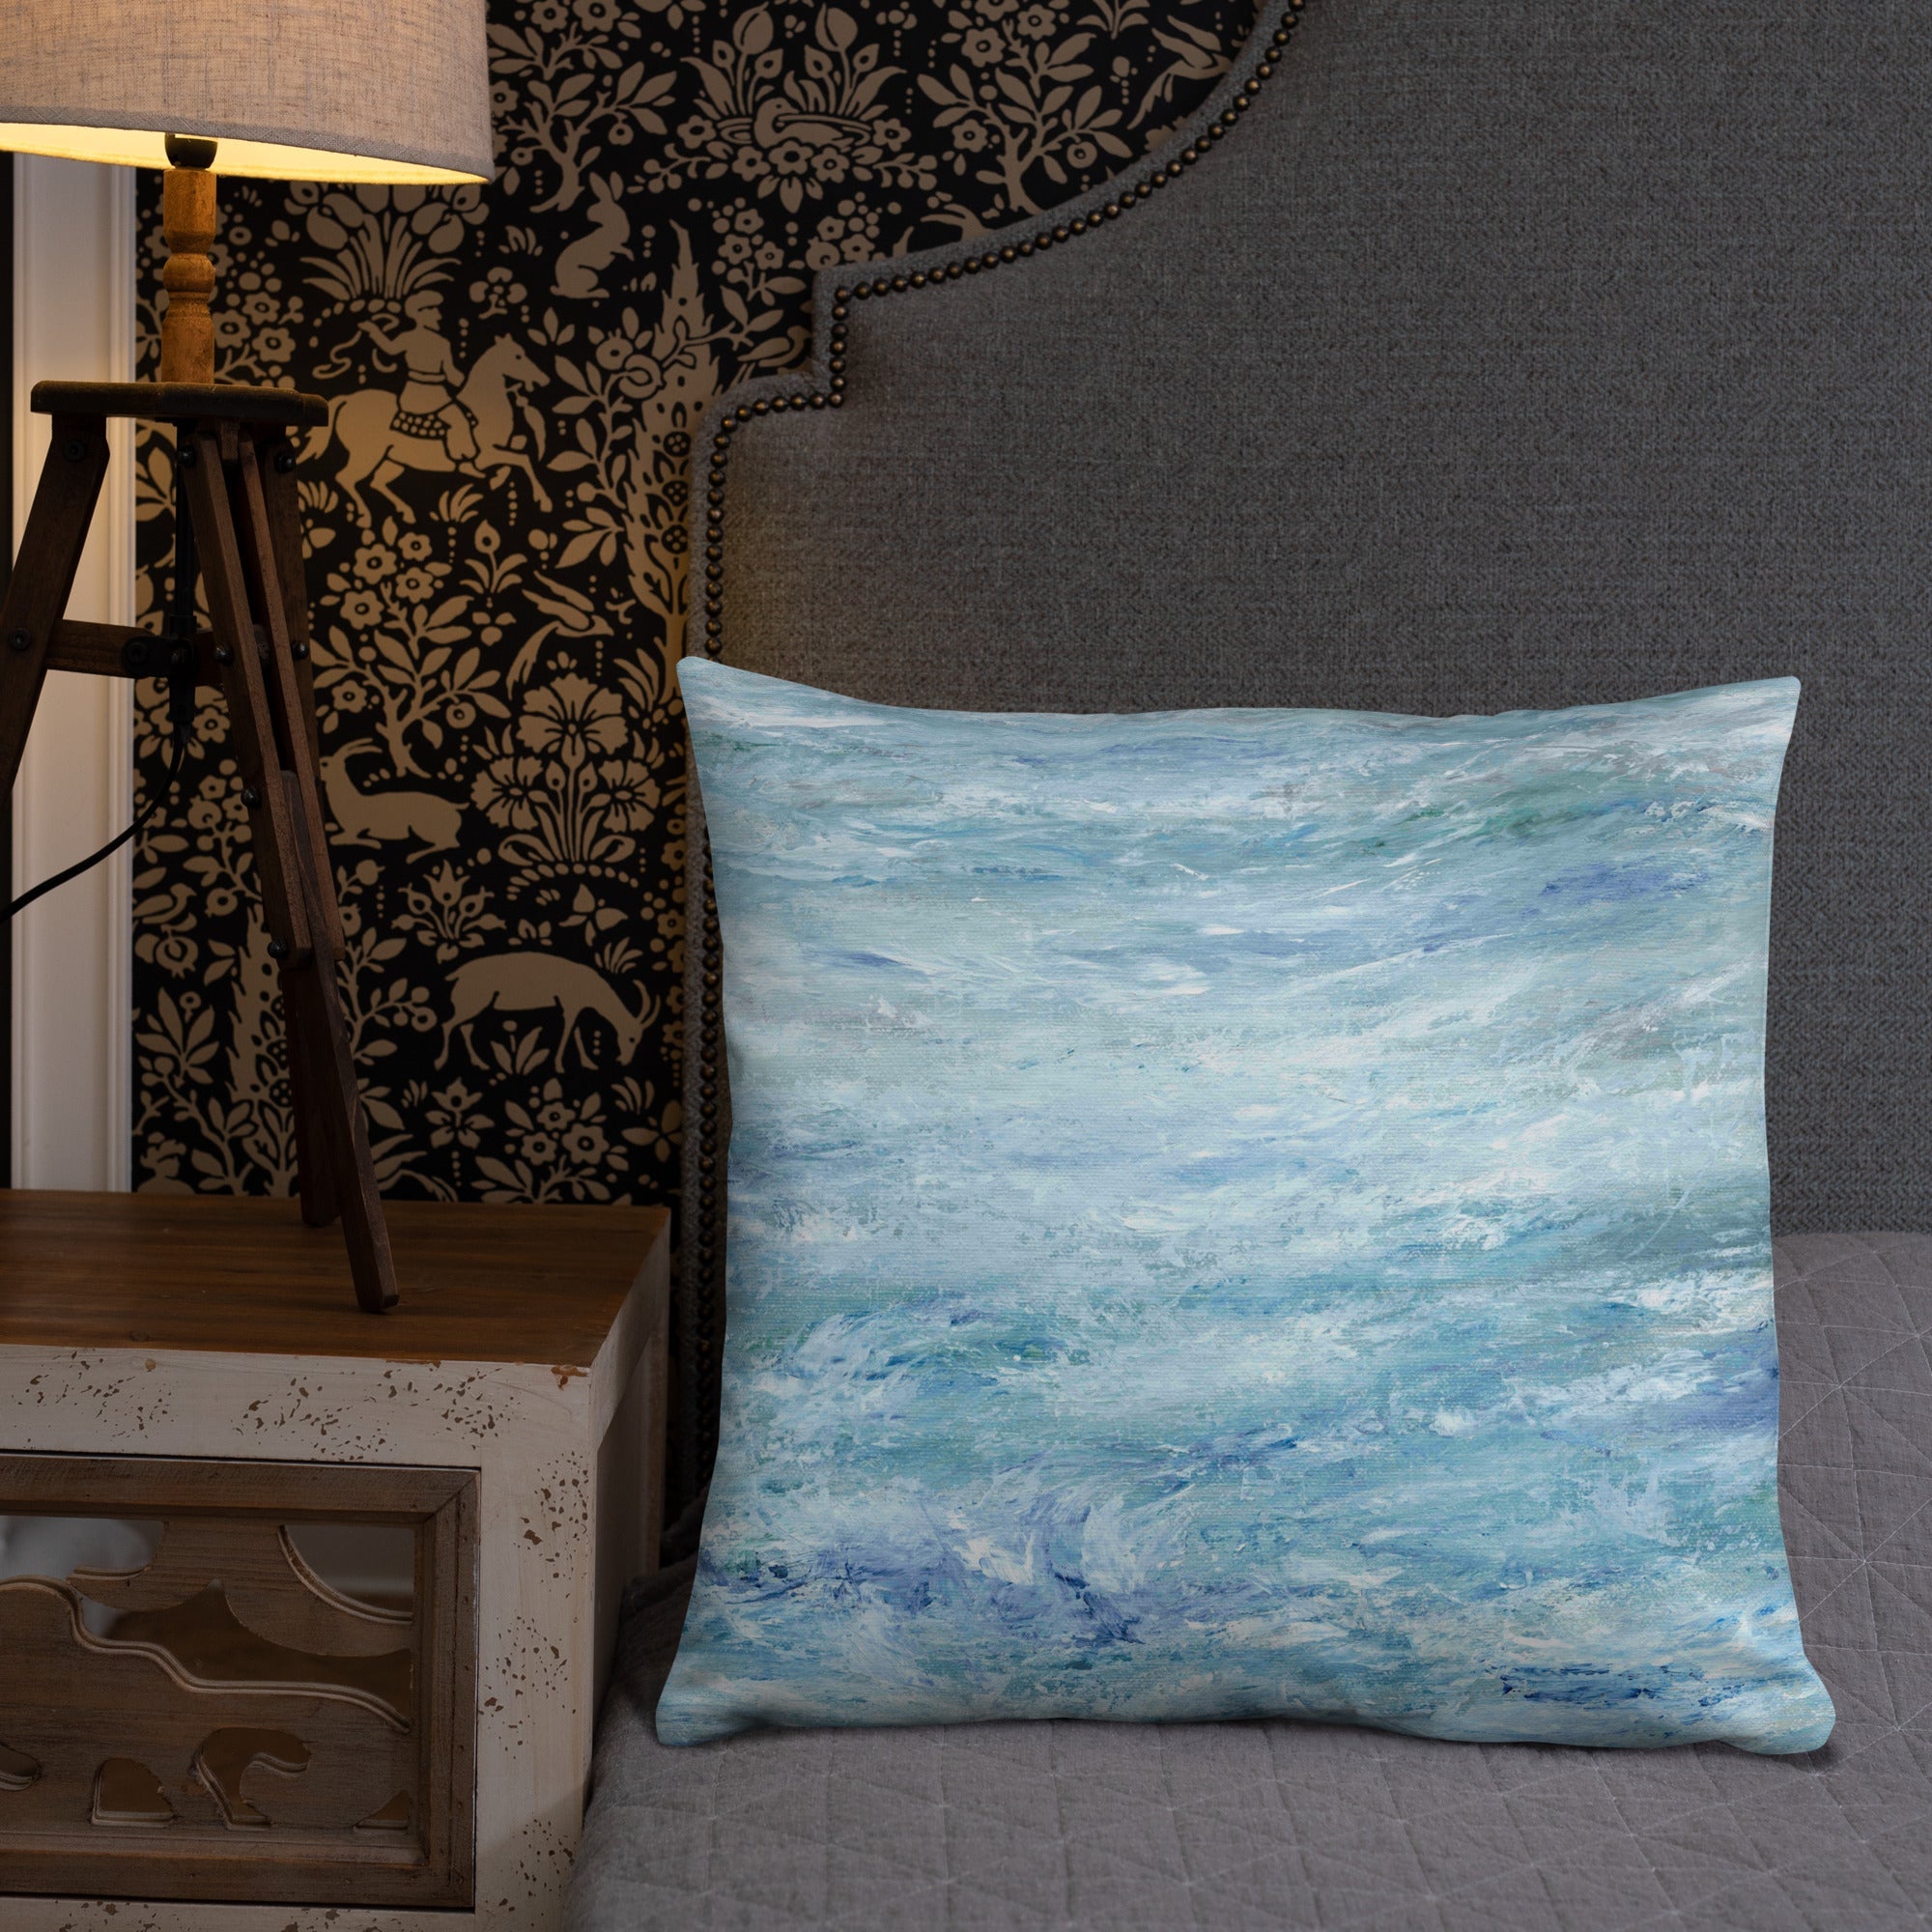 Coastal Sofa Cushion With Pillow Insert - Beach House Decor Ocean Waves